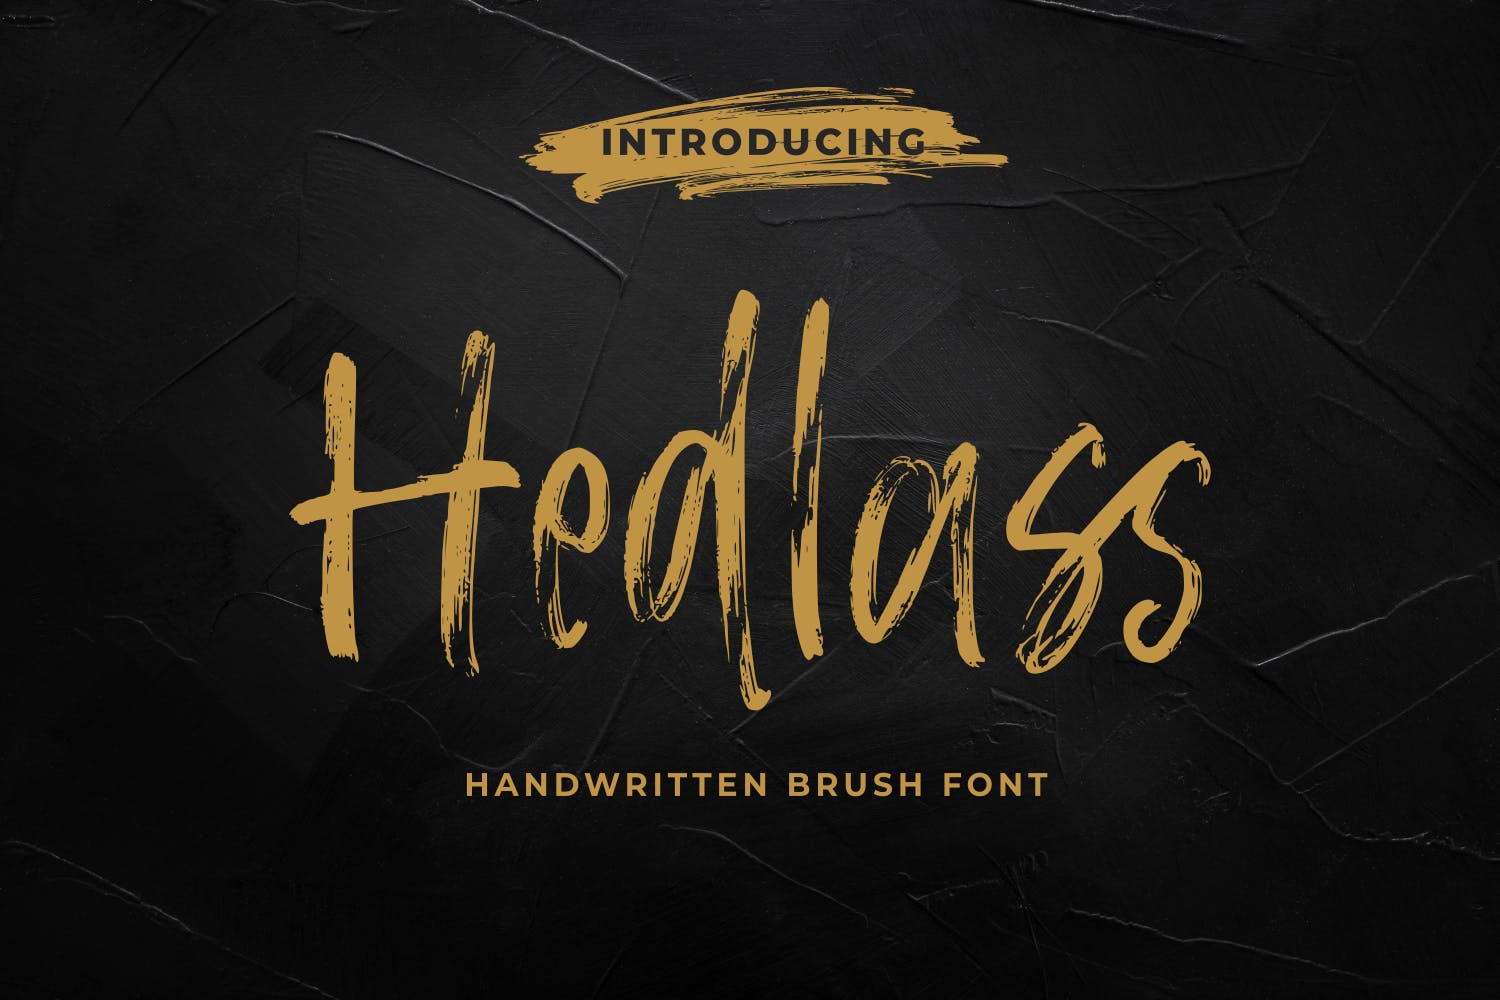 手写马克笔风格英文笔刷字体 Hedlass – The Handwritten Brush Font 设计素材 第1张